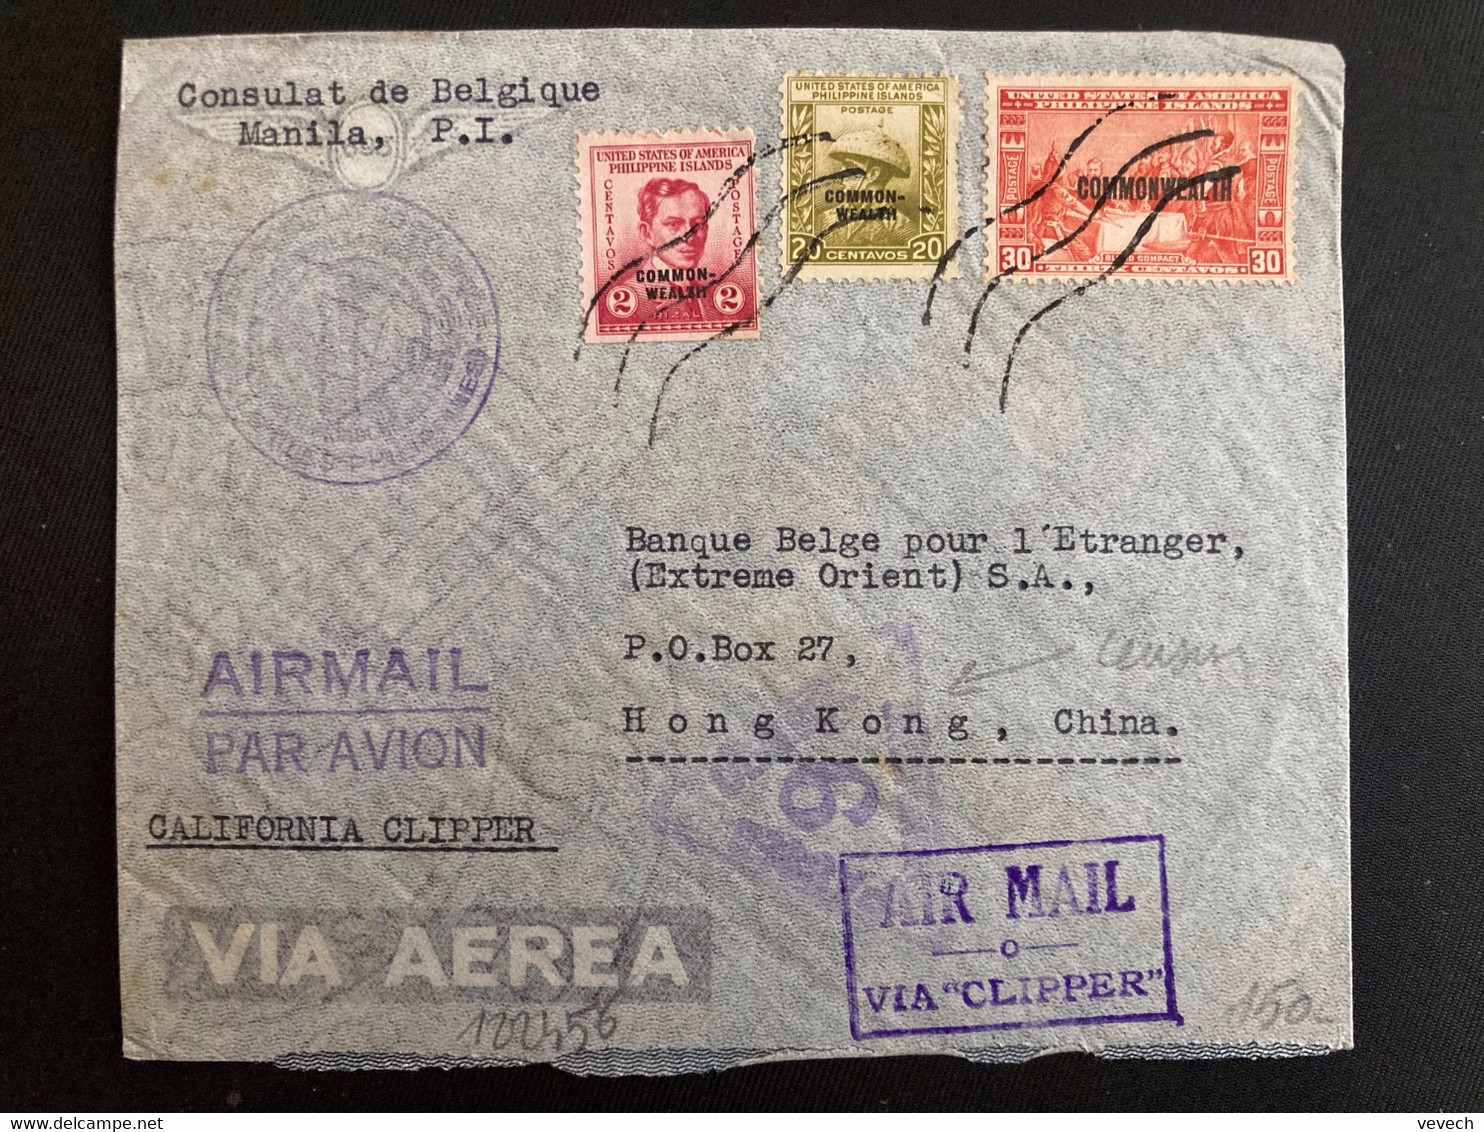 LETTRE Par Avion Via CALIFORNIA CLIPPER Pour HONG KONG CHINE TP 2 + 20 + 30 Surch. COMMONWEALTH OBL. +SEP 20 1940 MANILA - Philippinen